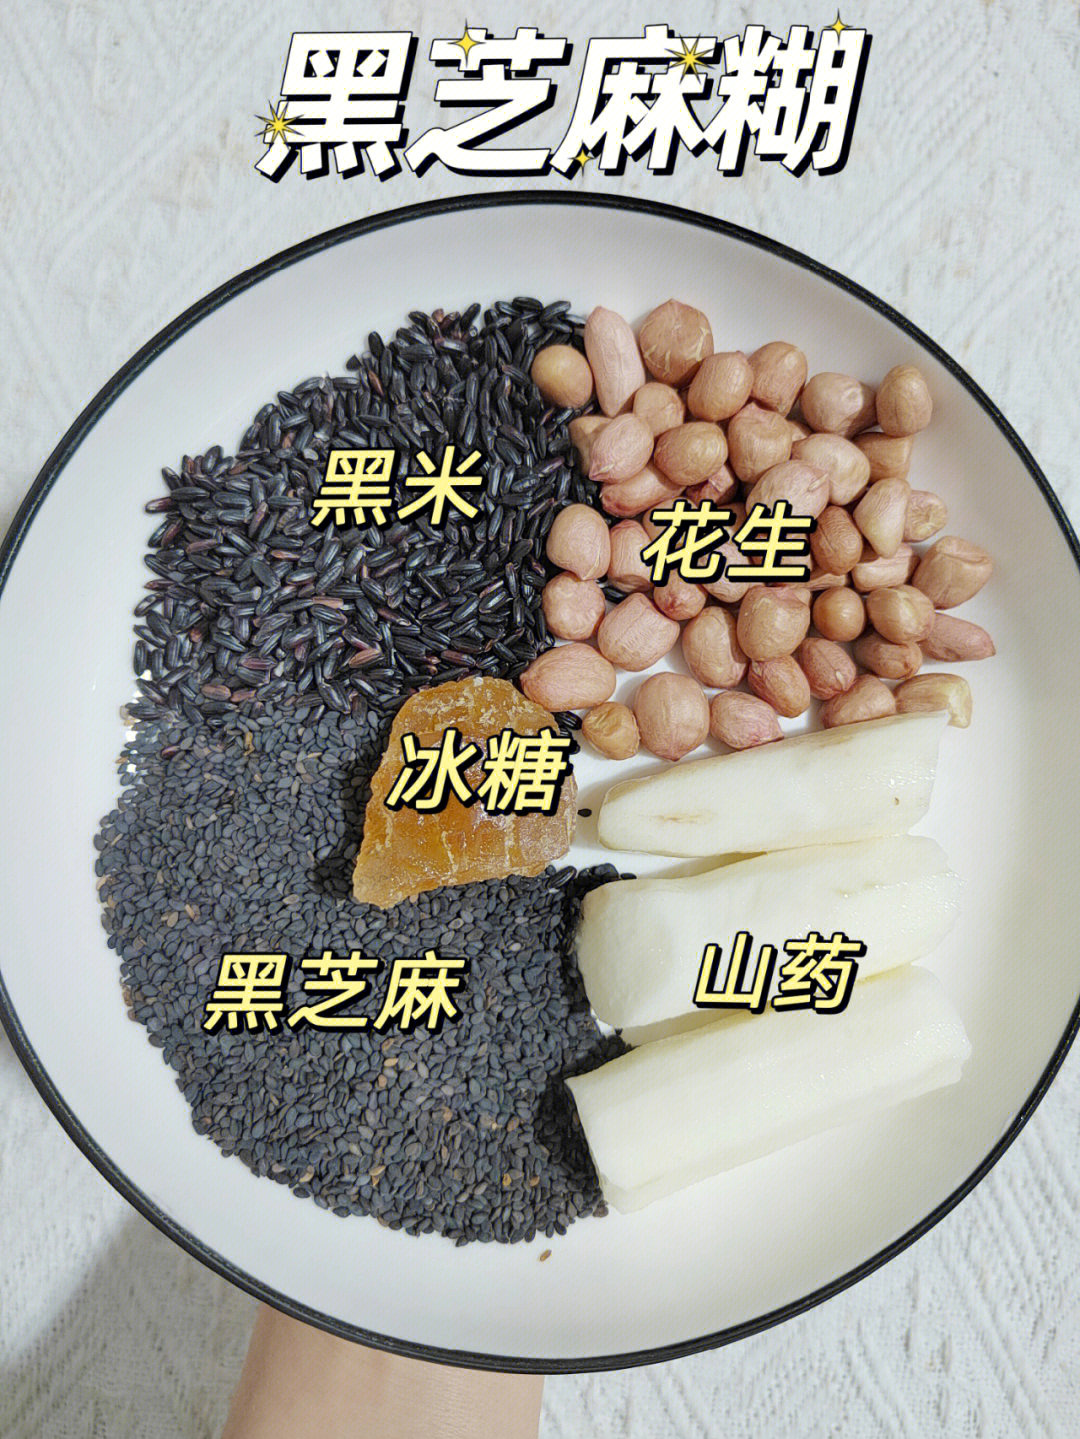 黑米米糊的食材搭配图片